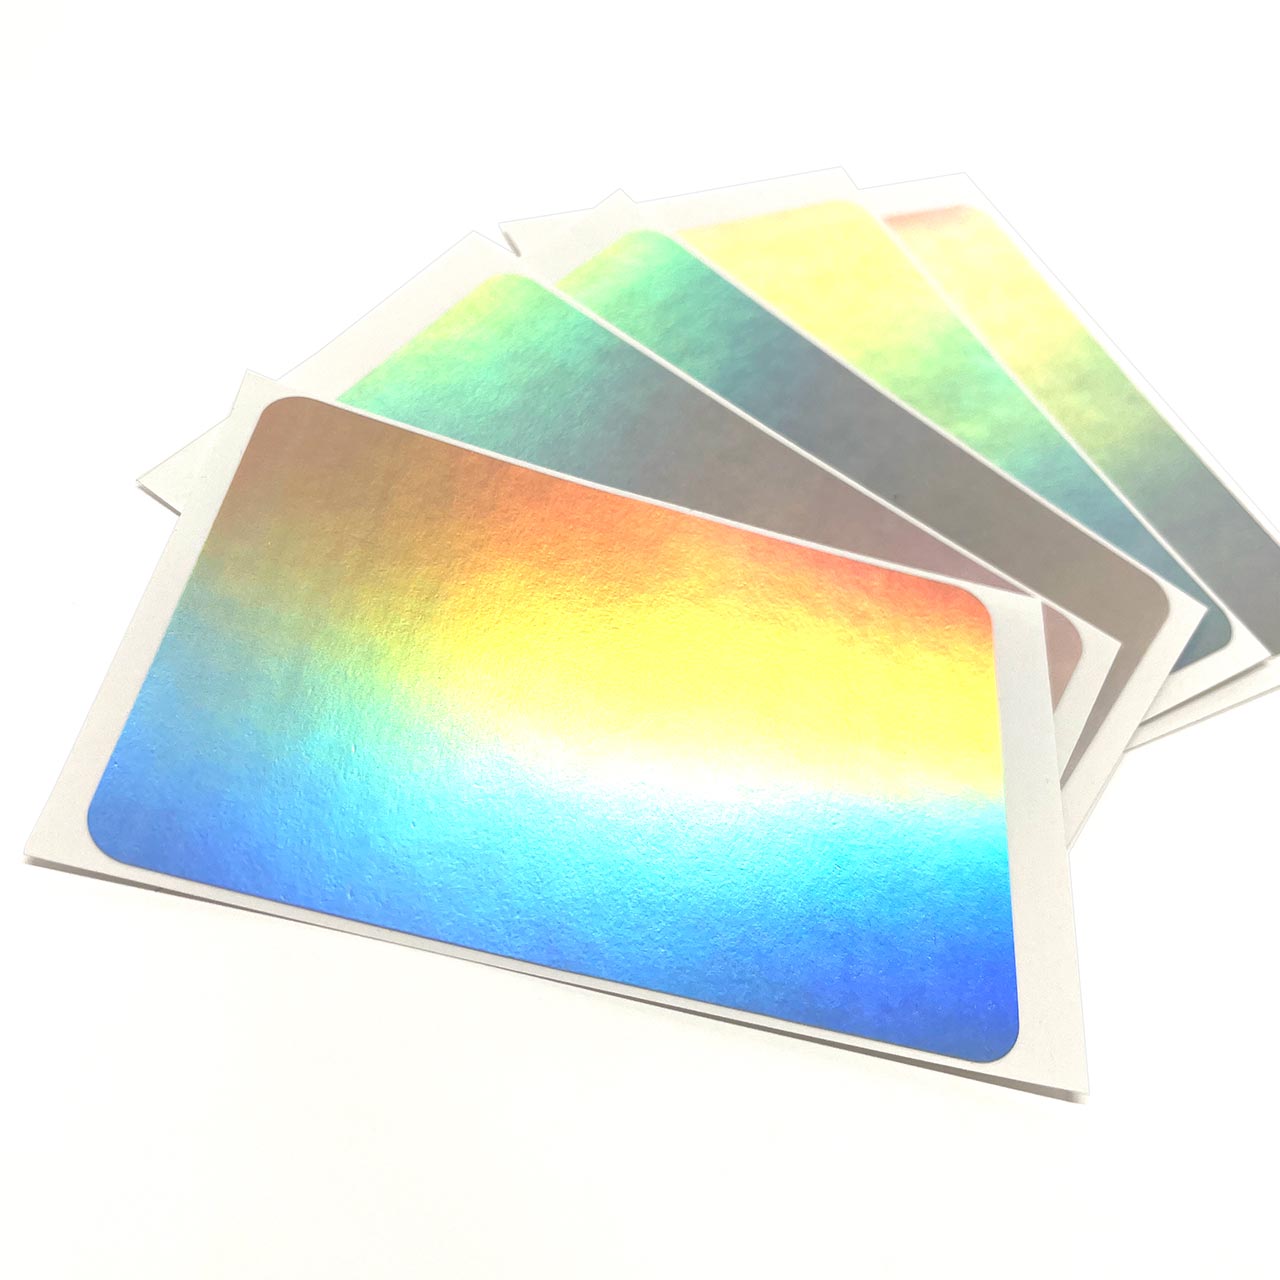 公式ショップ公式ショップFADEBOMB Plain Hologram Eggshell Sticker オーロラ ホログラム エッグシェルステッカー(90mmx60mm)  文房具・事務用品